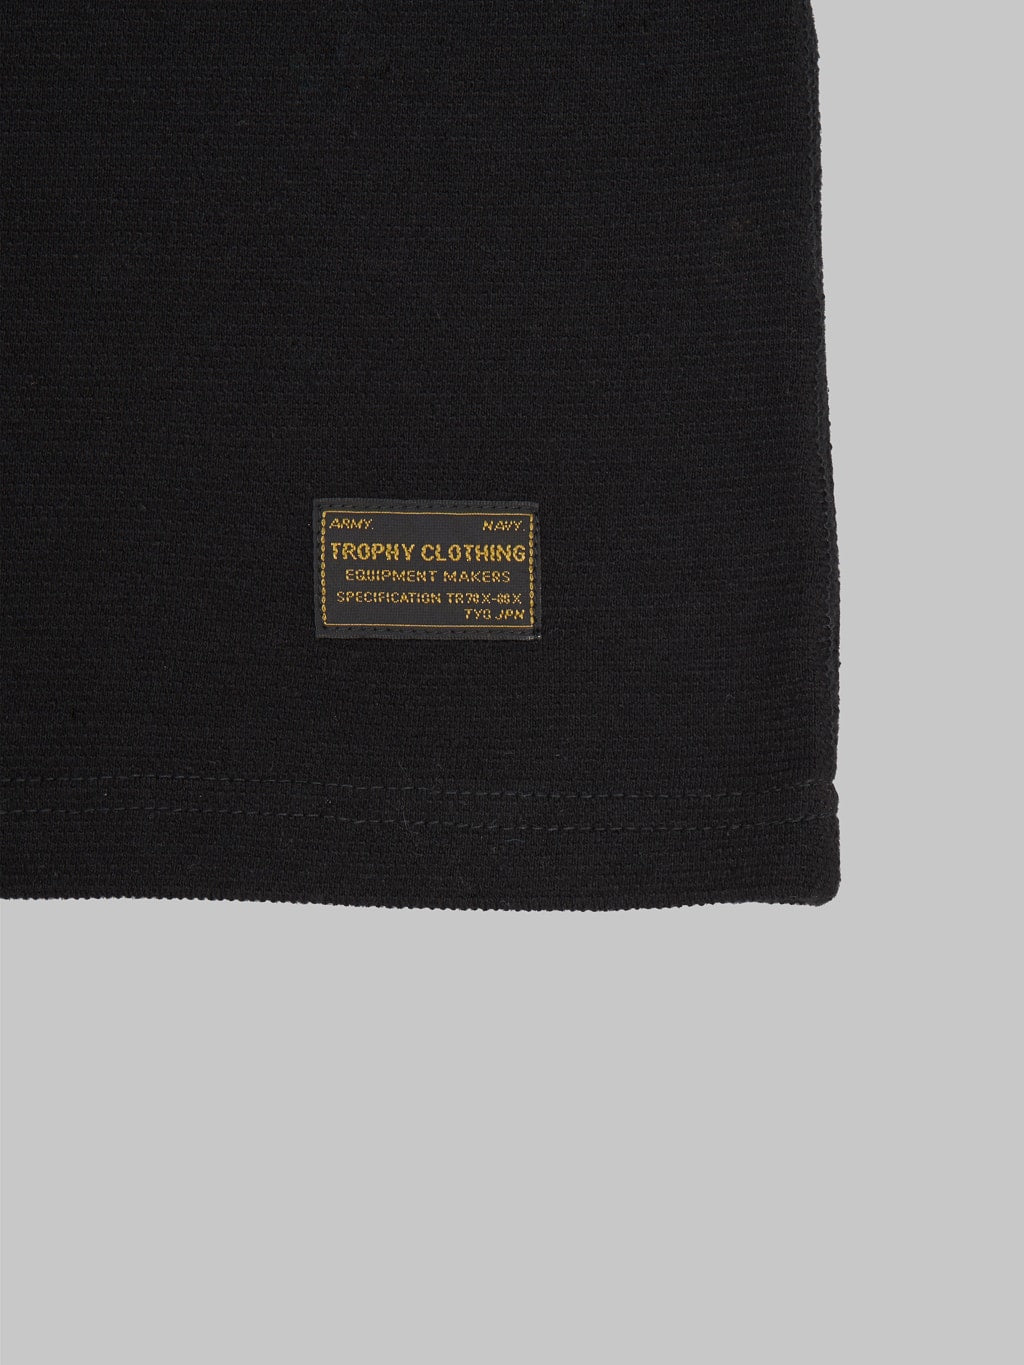 Trophy Clothing Utility Mil Tee black printed branding